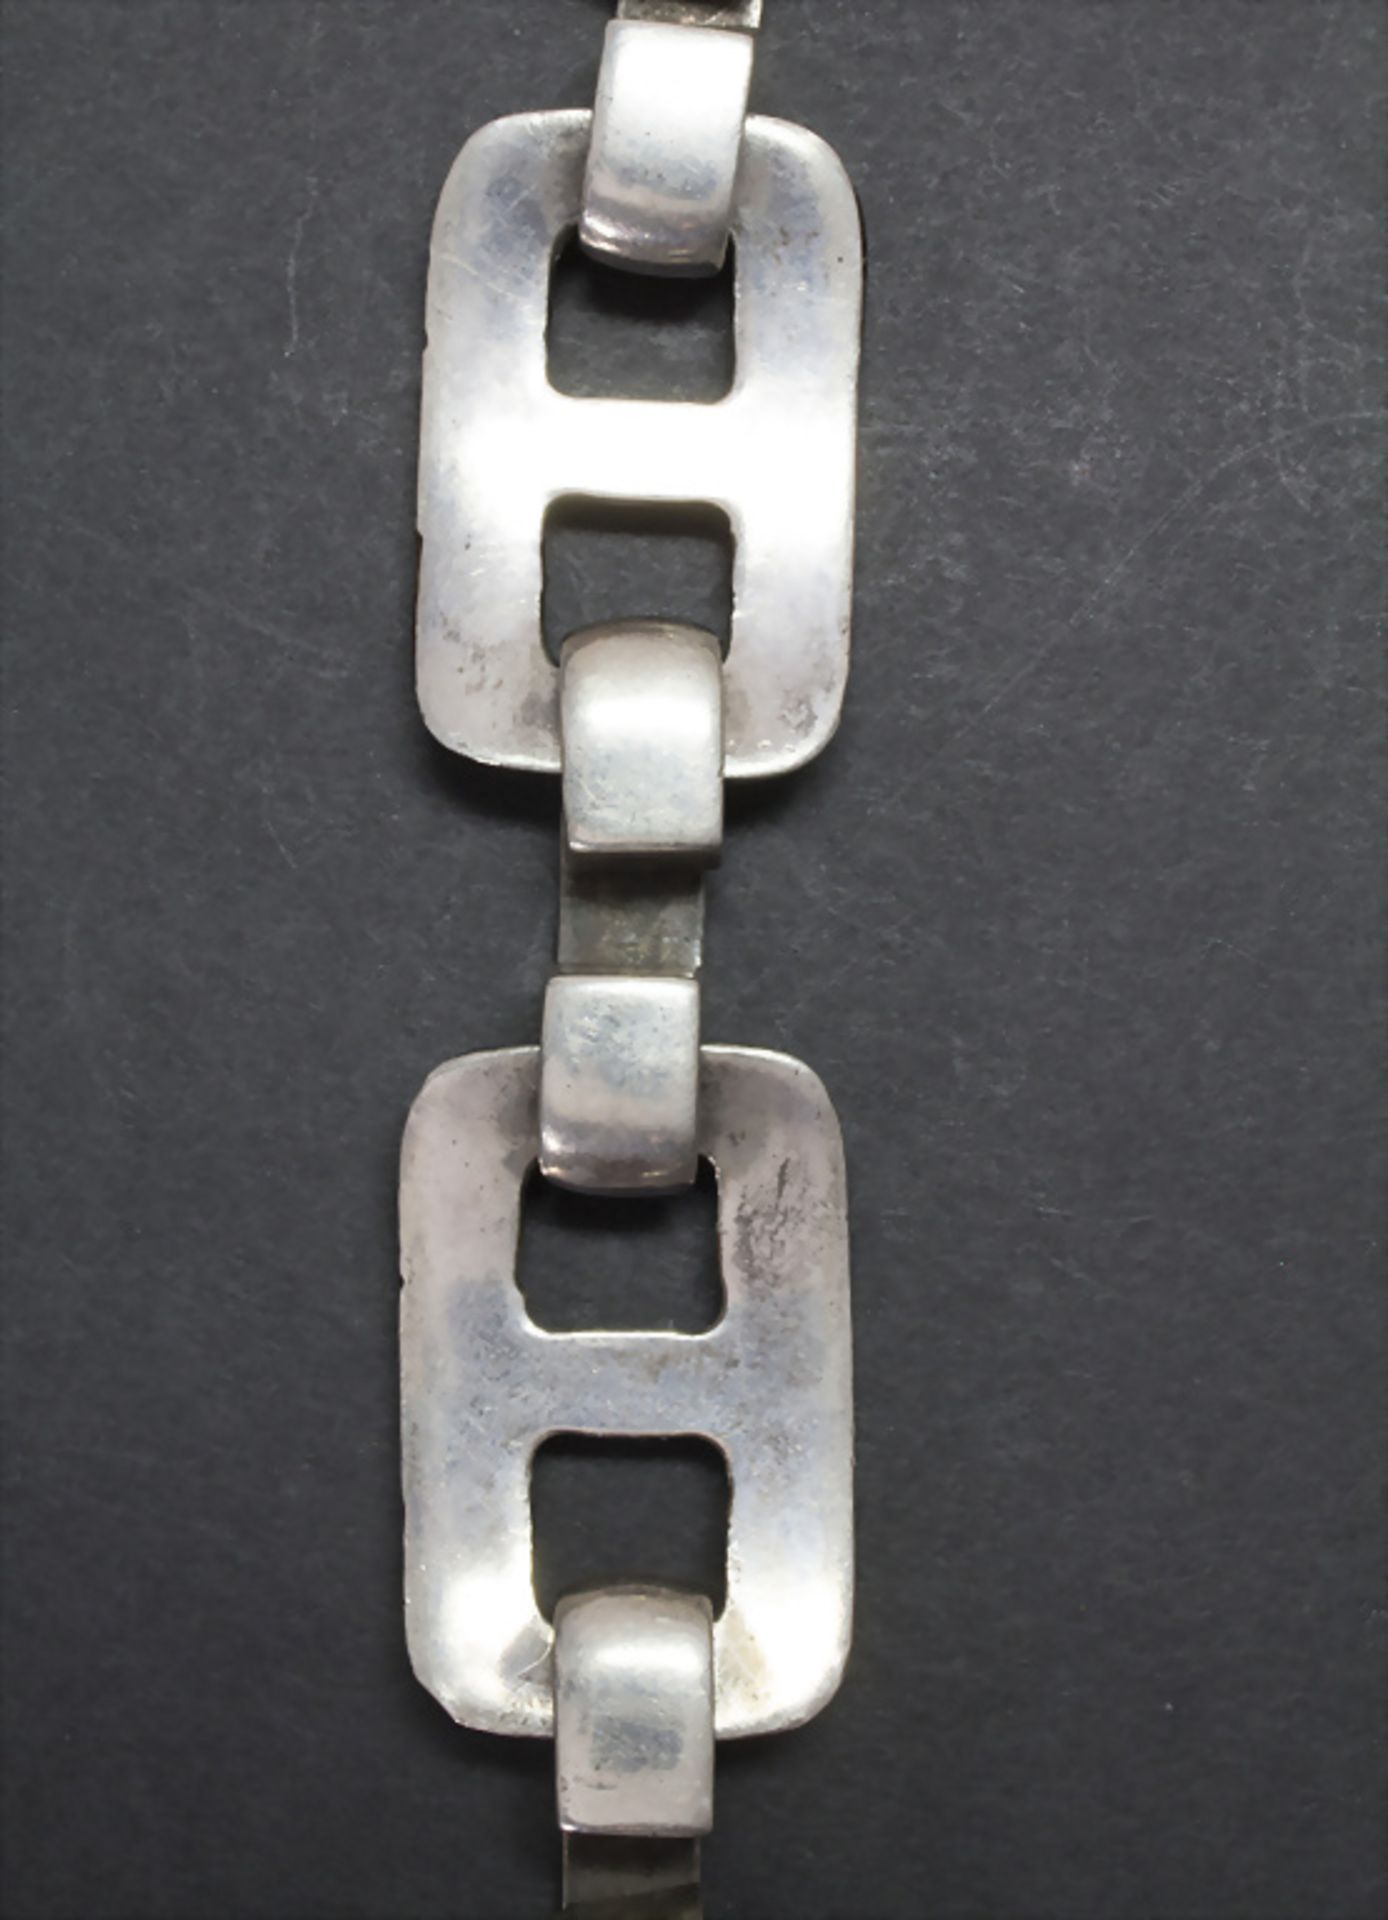 Designer Armband in Silber / A designer silver bracelet - Image 3 of 3